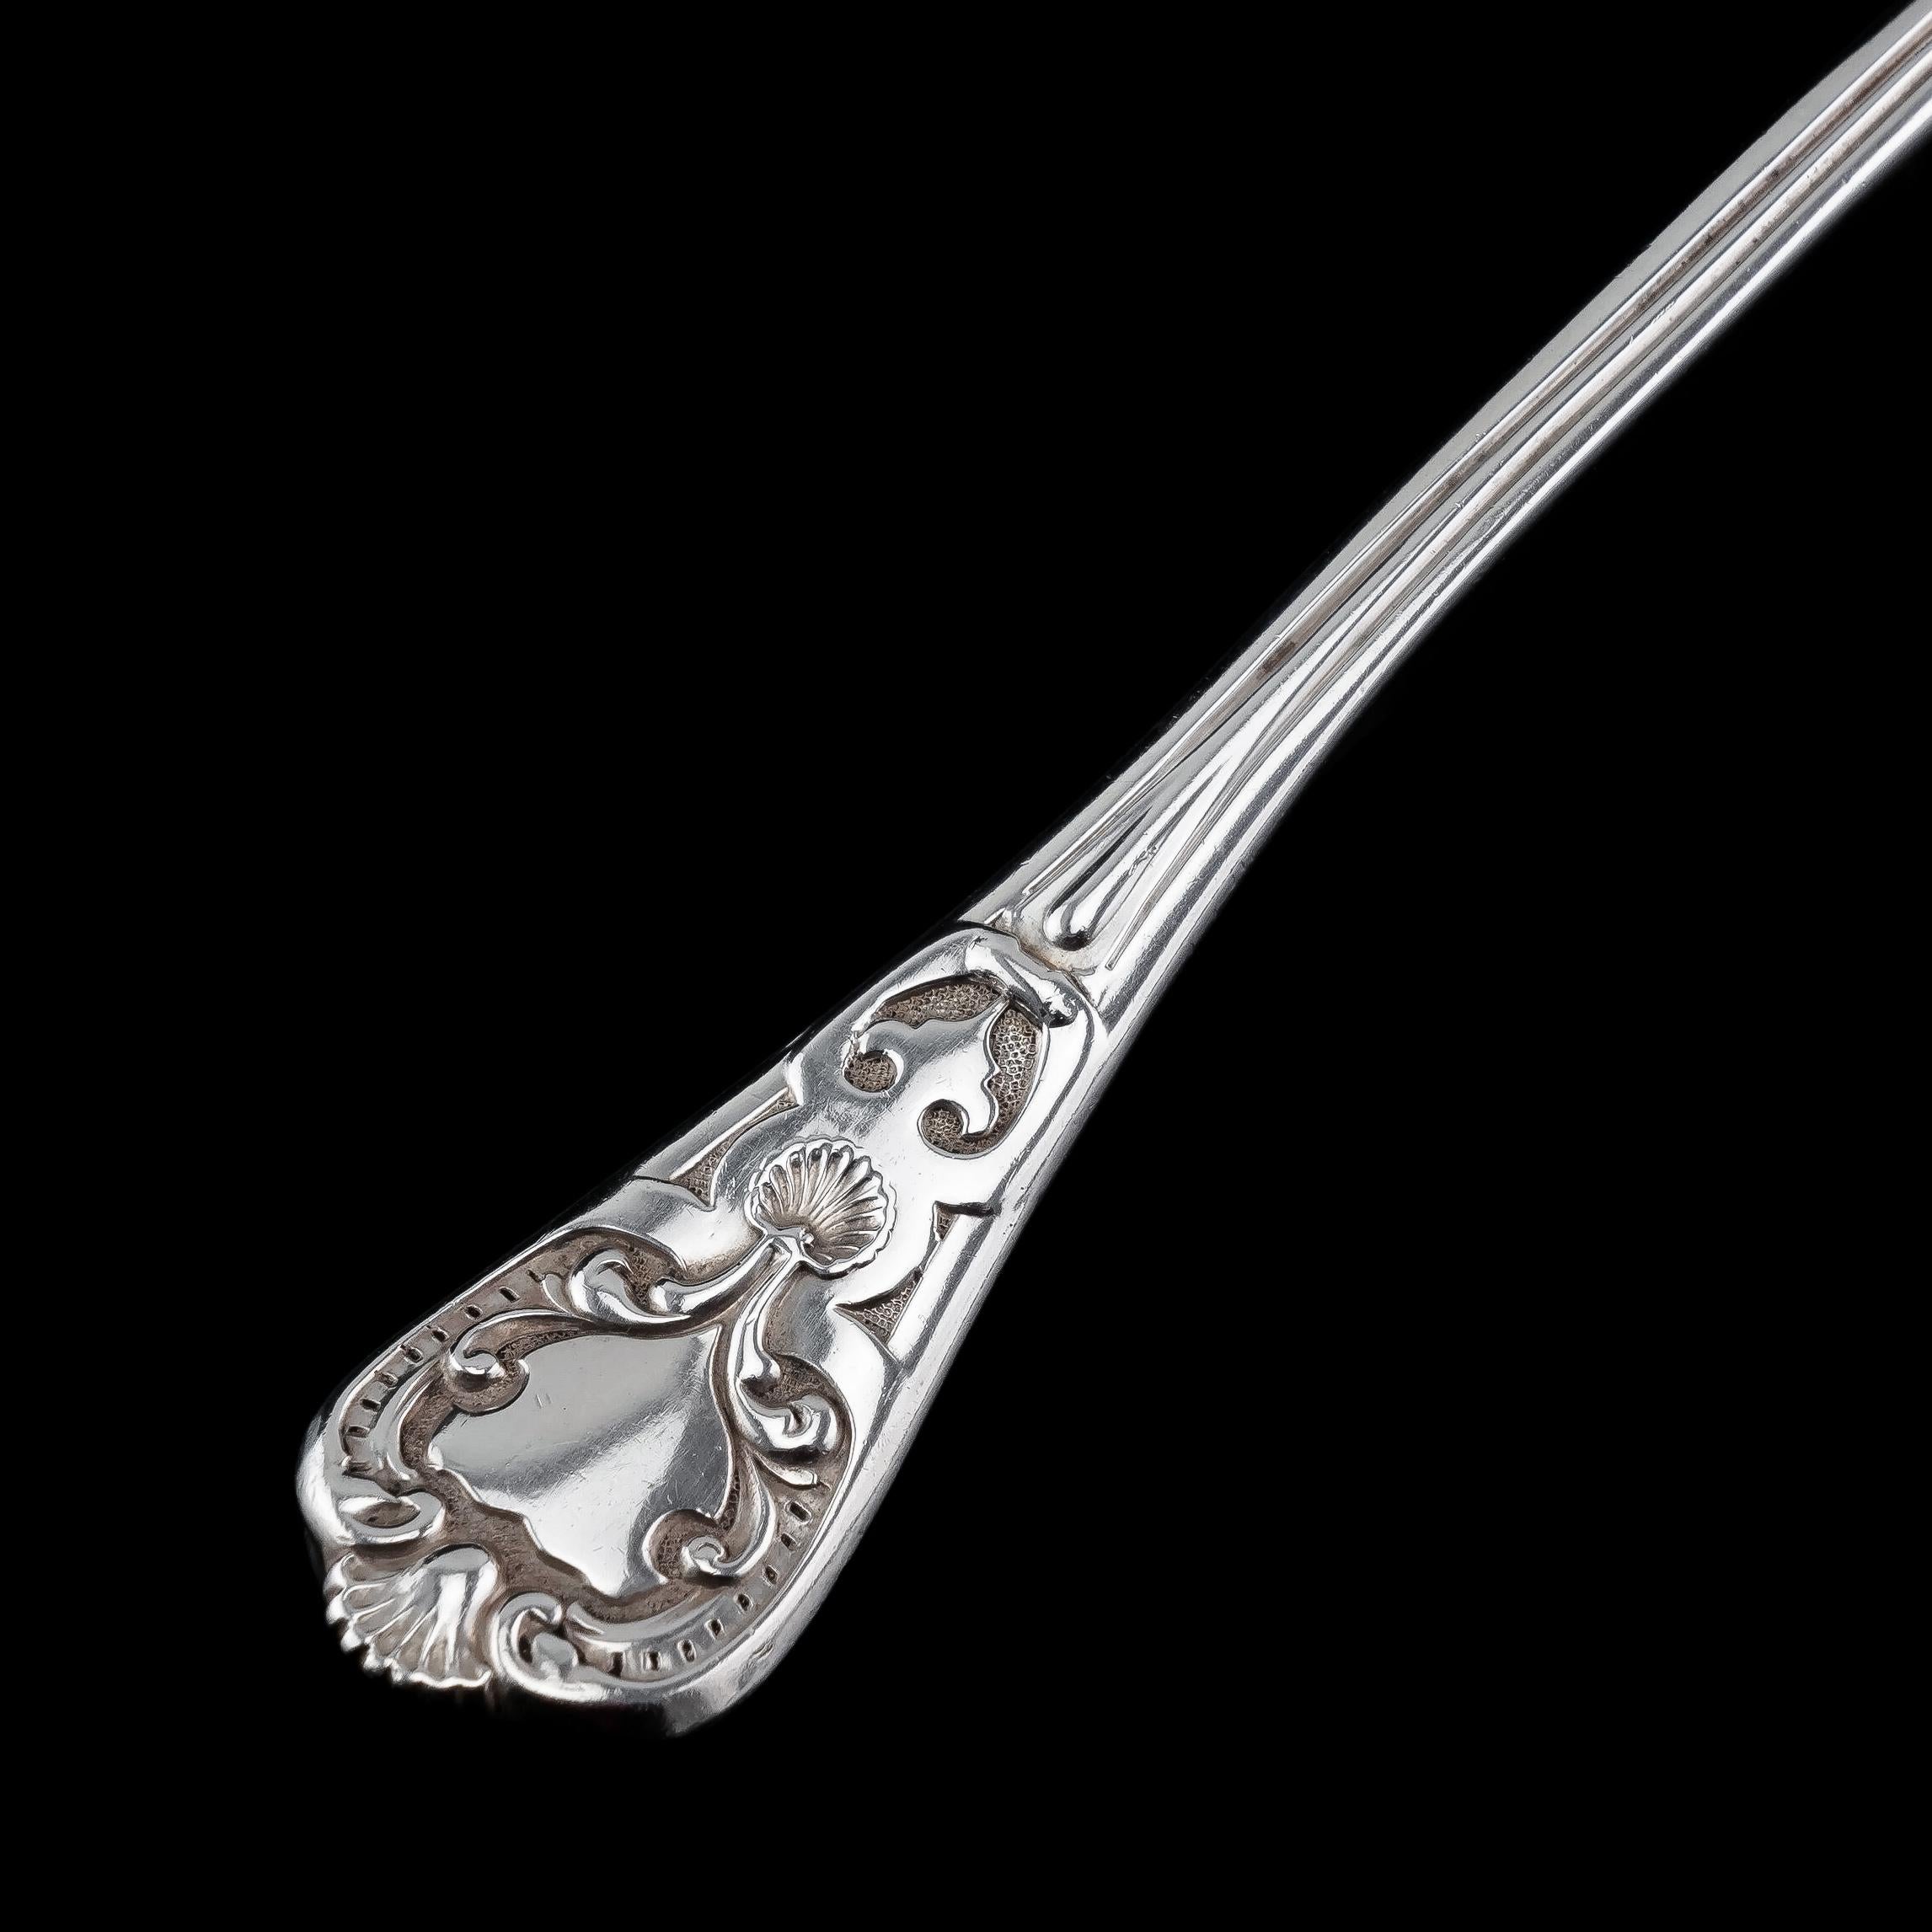 Victorian Antique Solid Silver Sugar Sifter Spoon, Francis Higgins, 1856